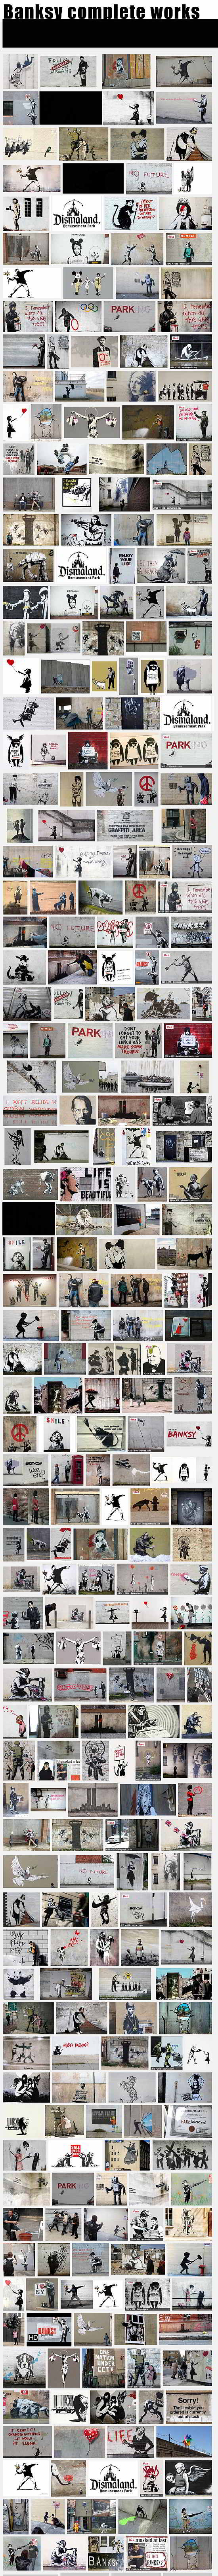 Toda la obra del artista urbano Banksy-Autogiro arte actual